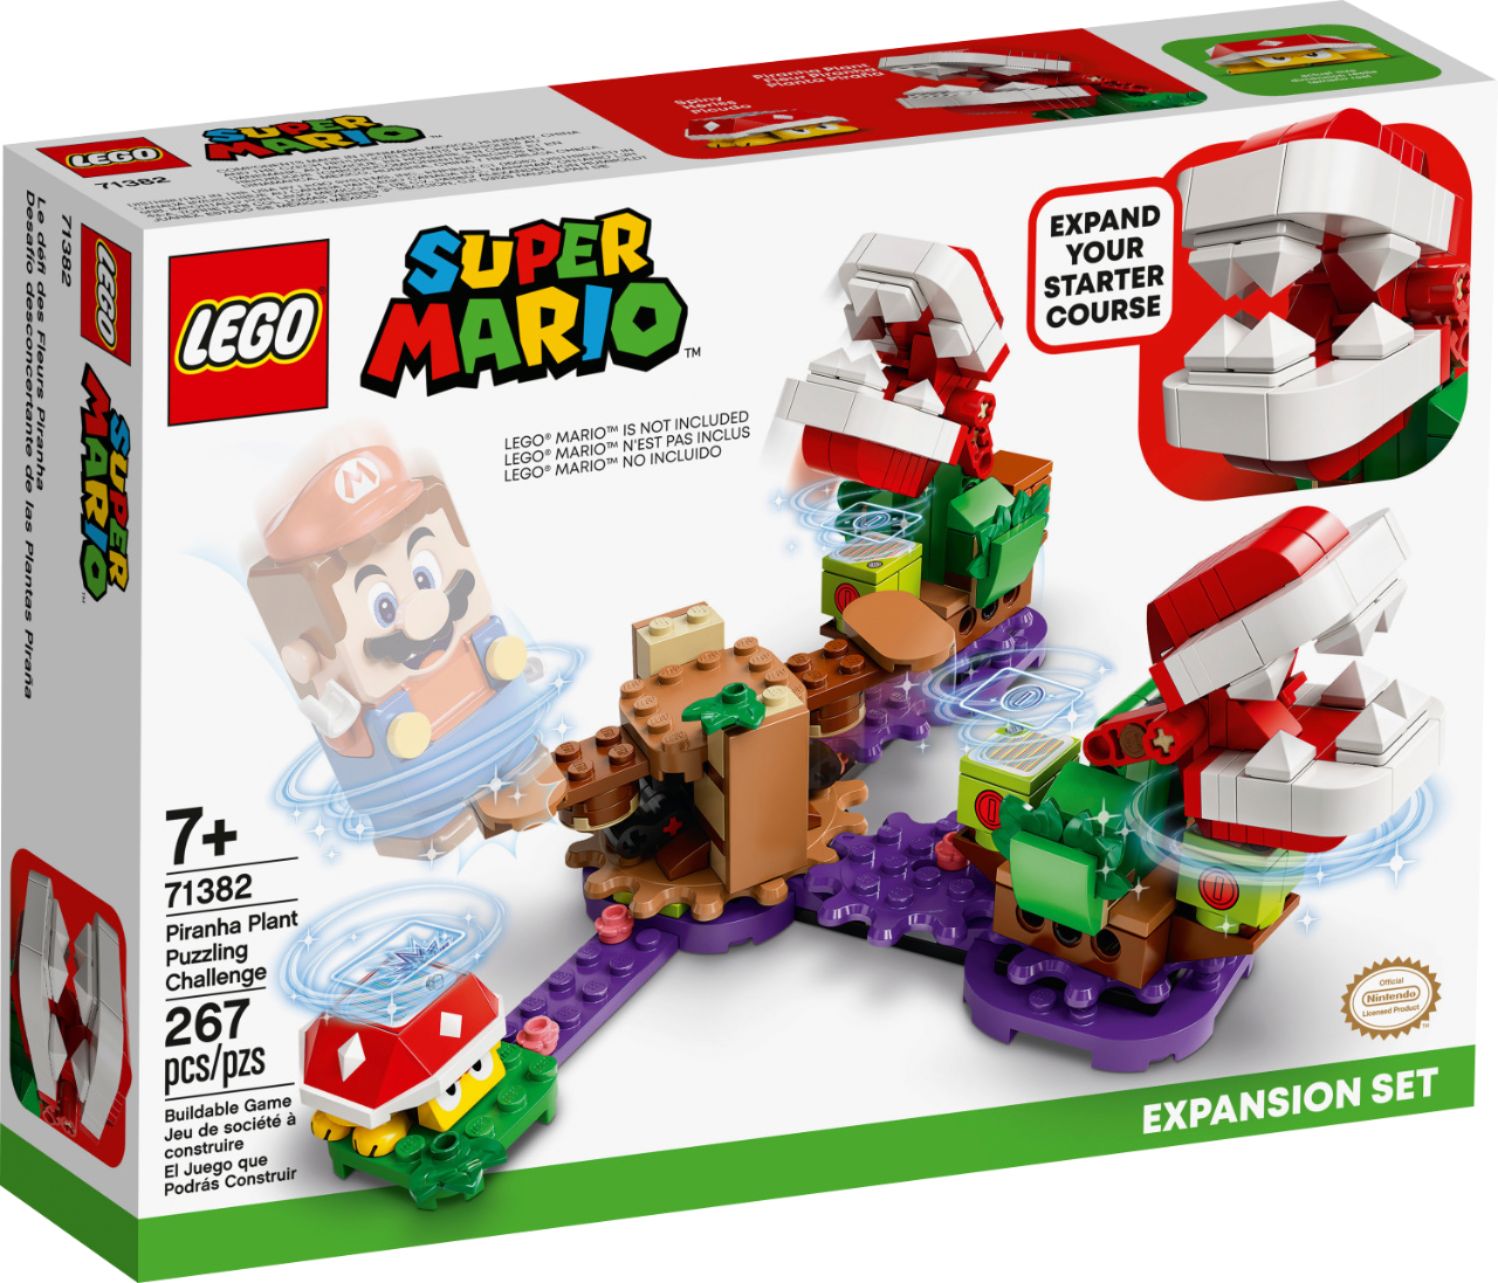 LEGO Super Mario Cat Mario Power-Up Pack 71372 6288934 - Best Buy